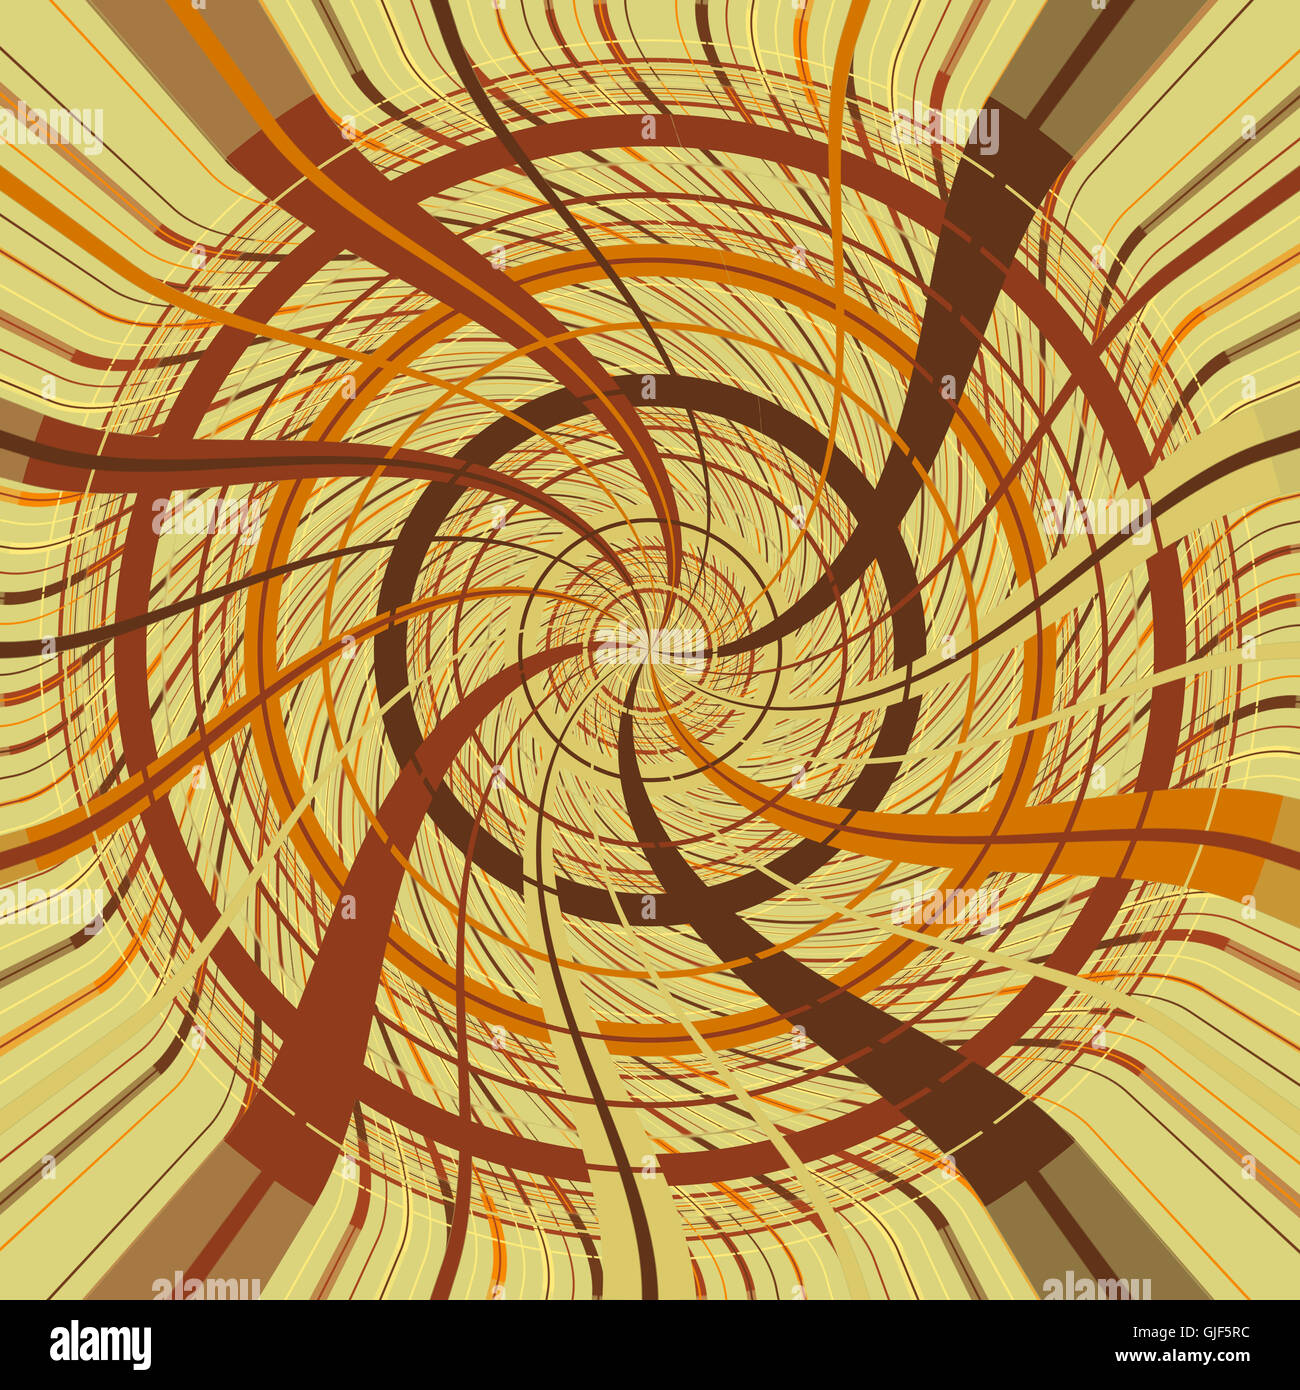 Vortex hechas con líneas de color naranja y marrón sobre un fondo tostado. Digital geométrica art. Foto de stock